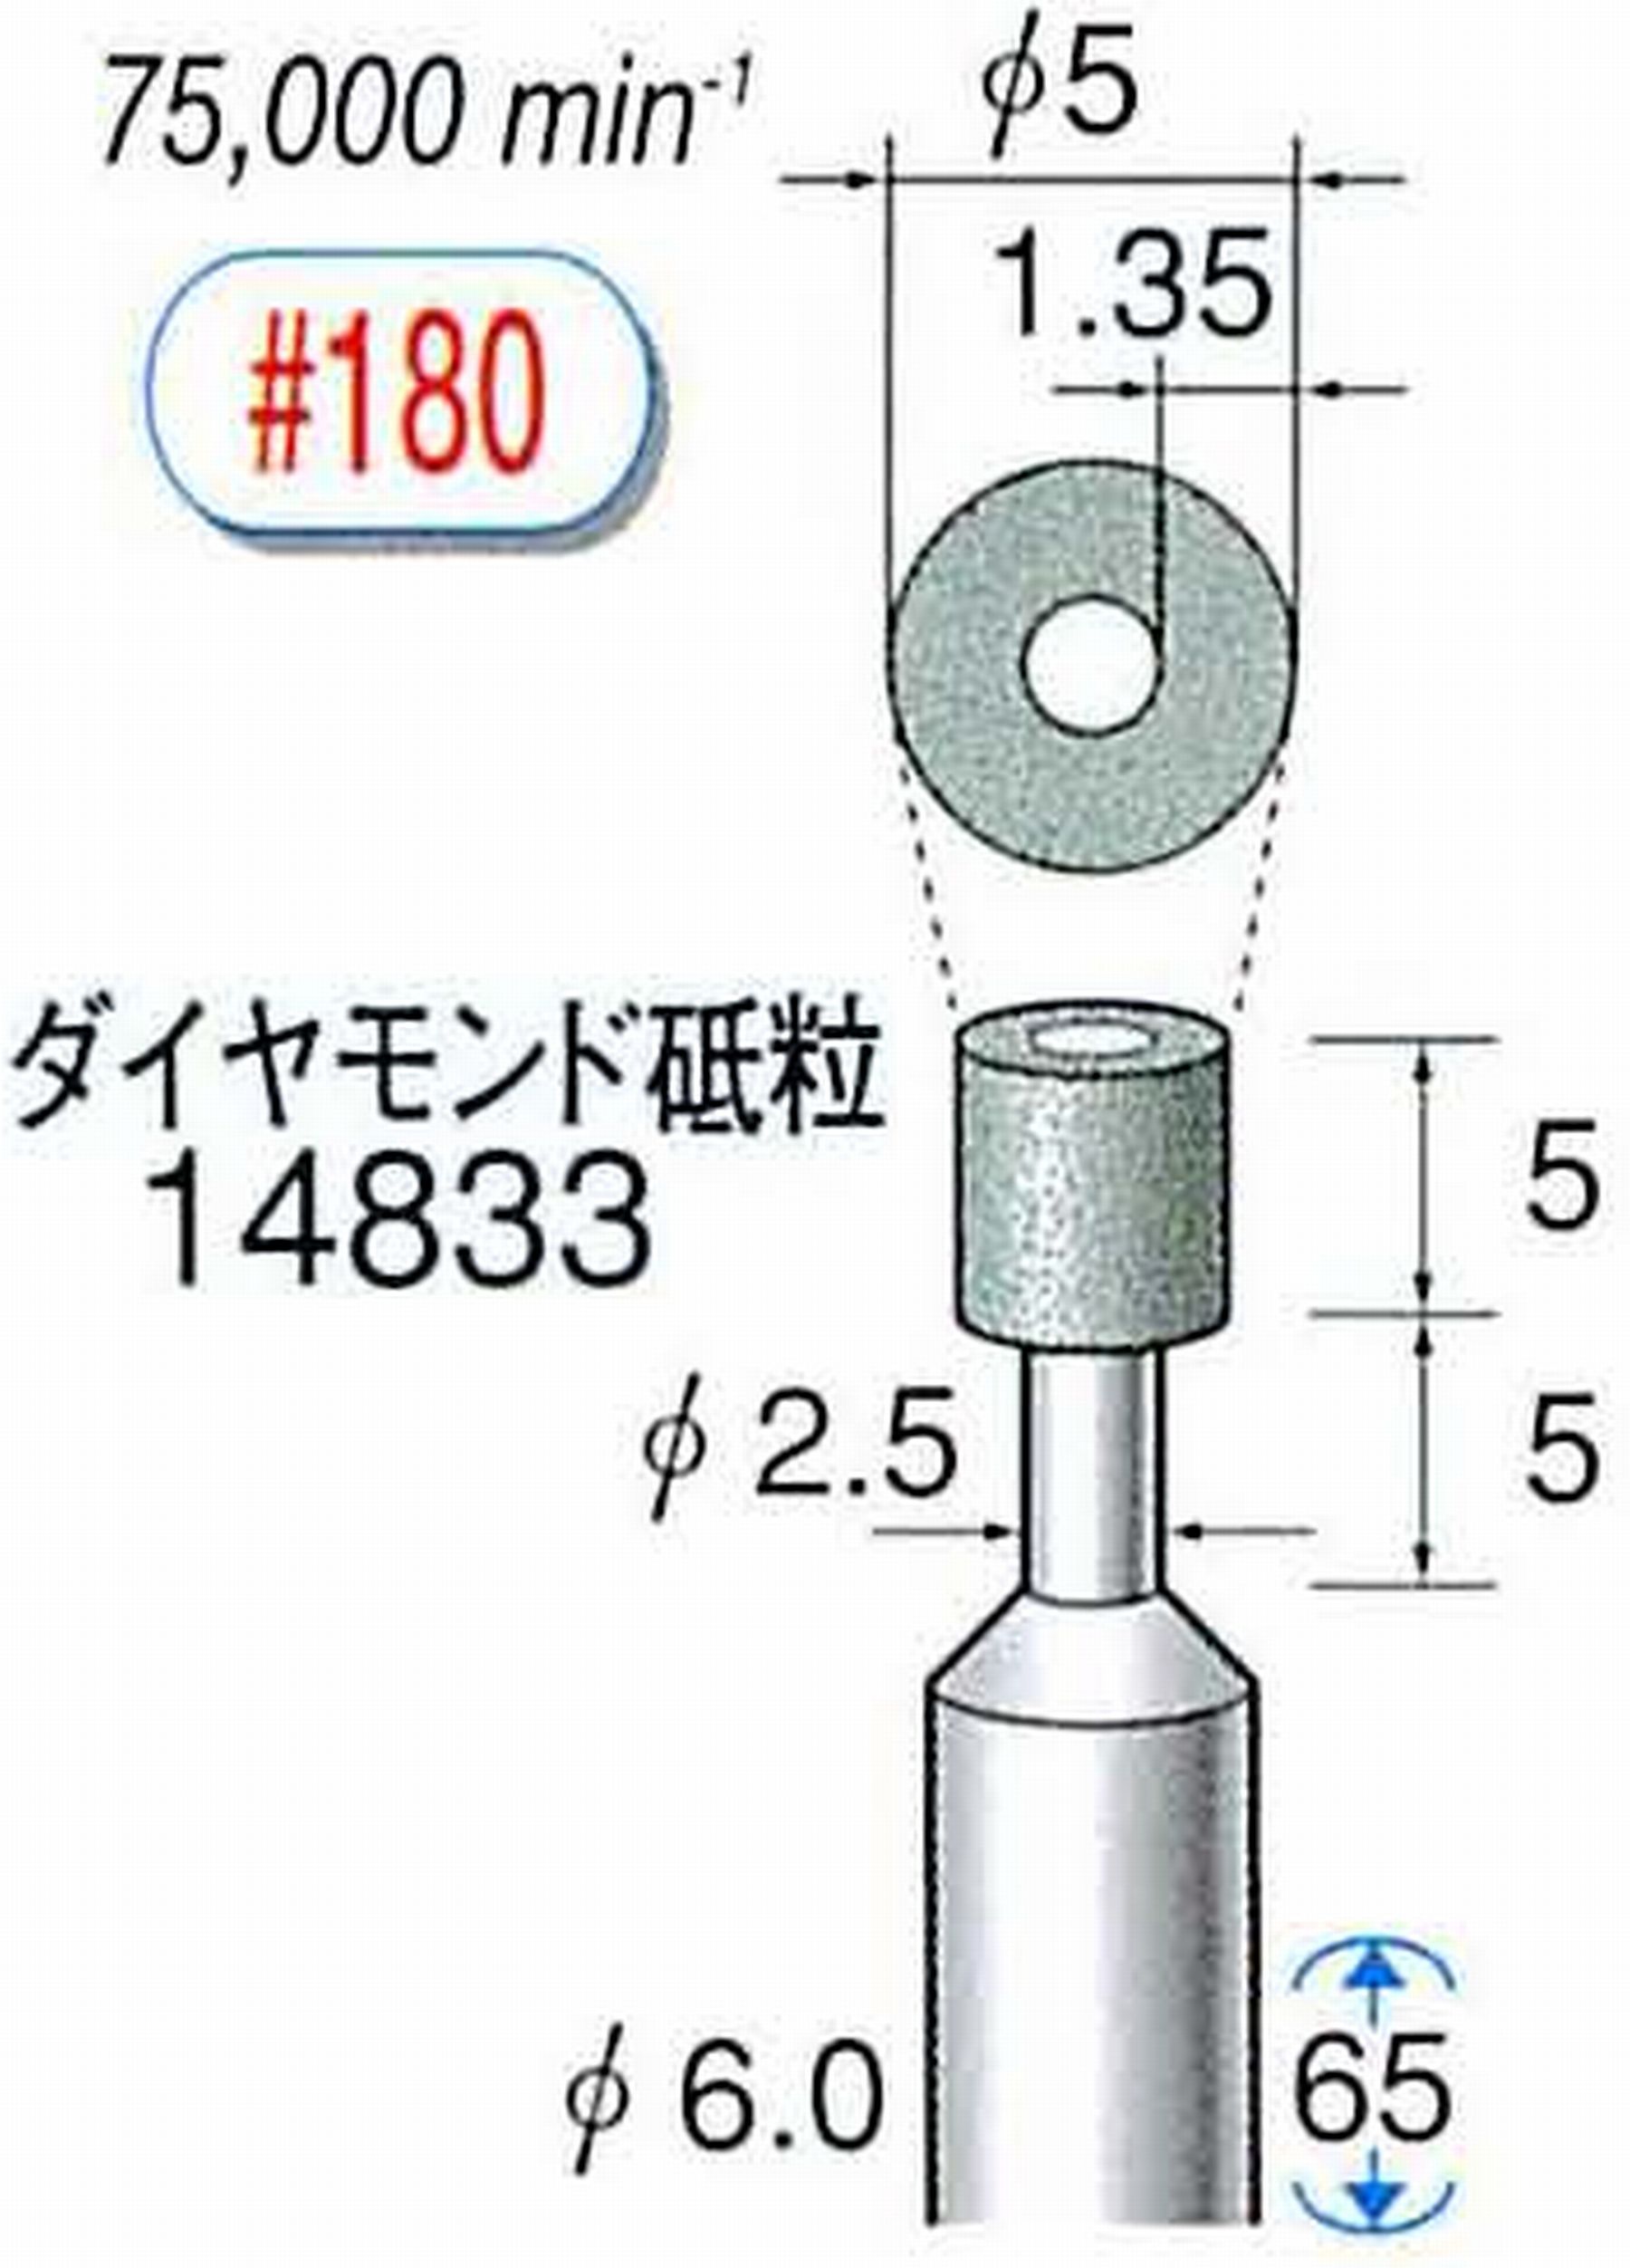 ナカニシ/NAKANISHI ビトリファイドダイヤモンド砥石 ダイヤモンド砥粒 軸径(シャンク)φ6.0mm 14833